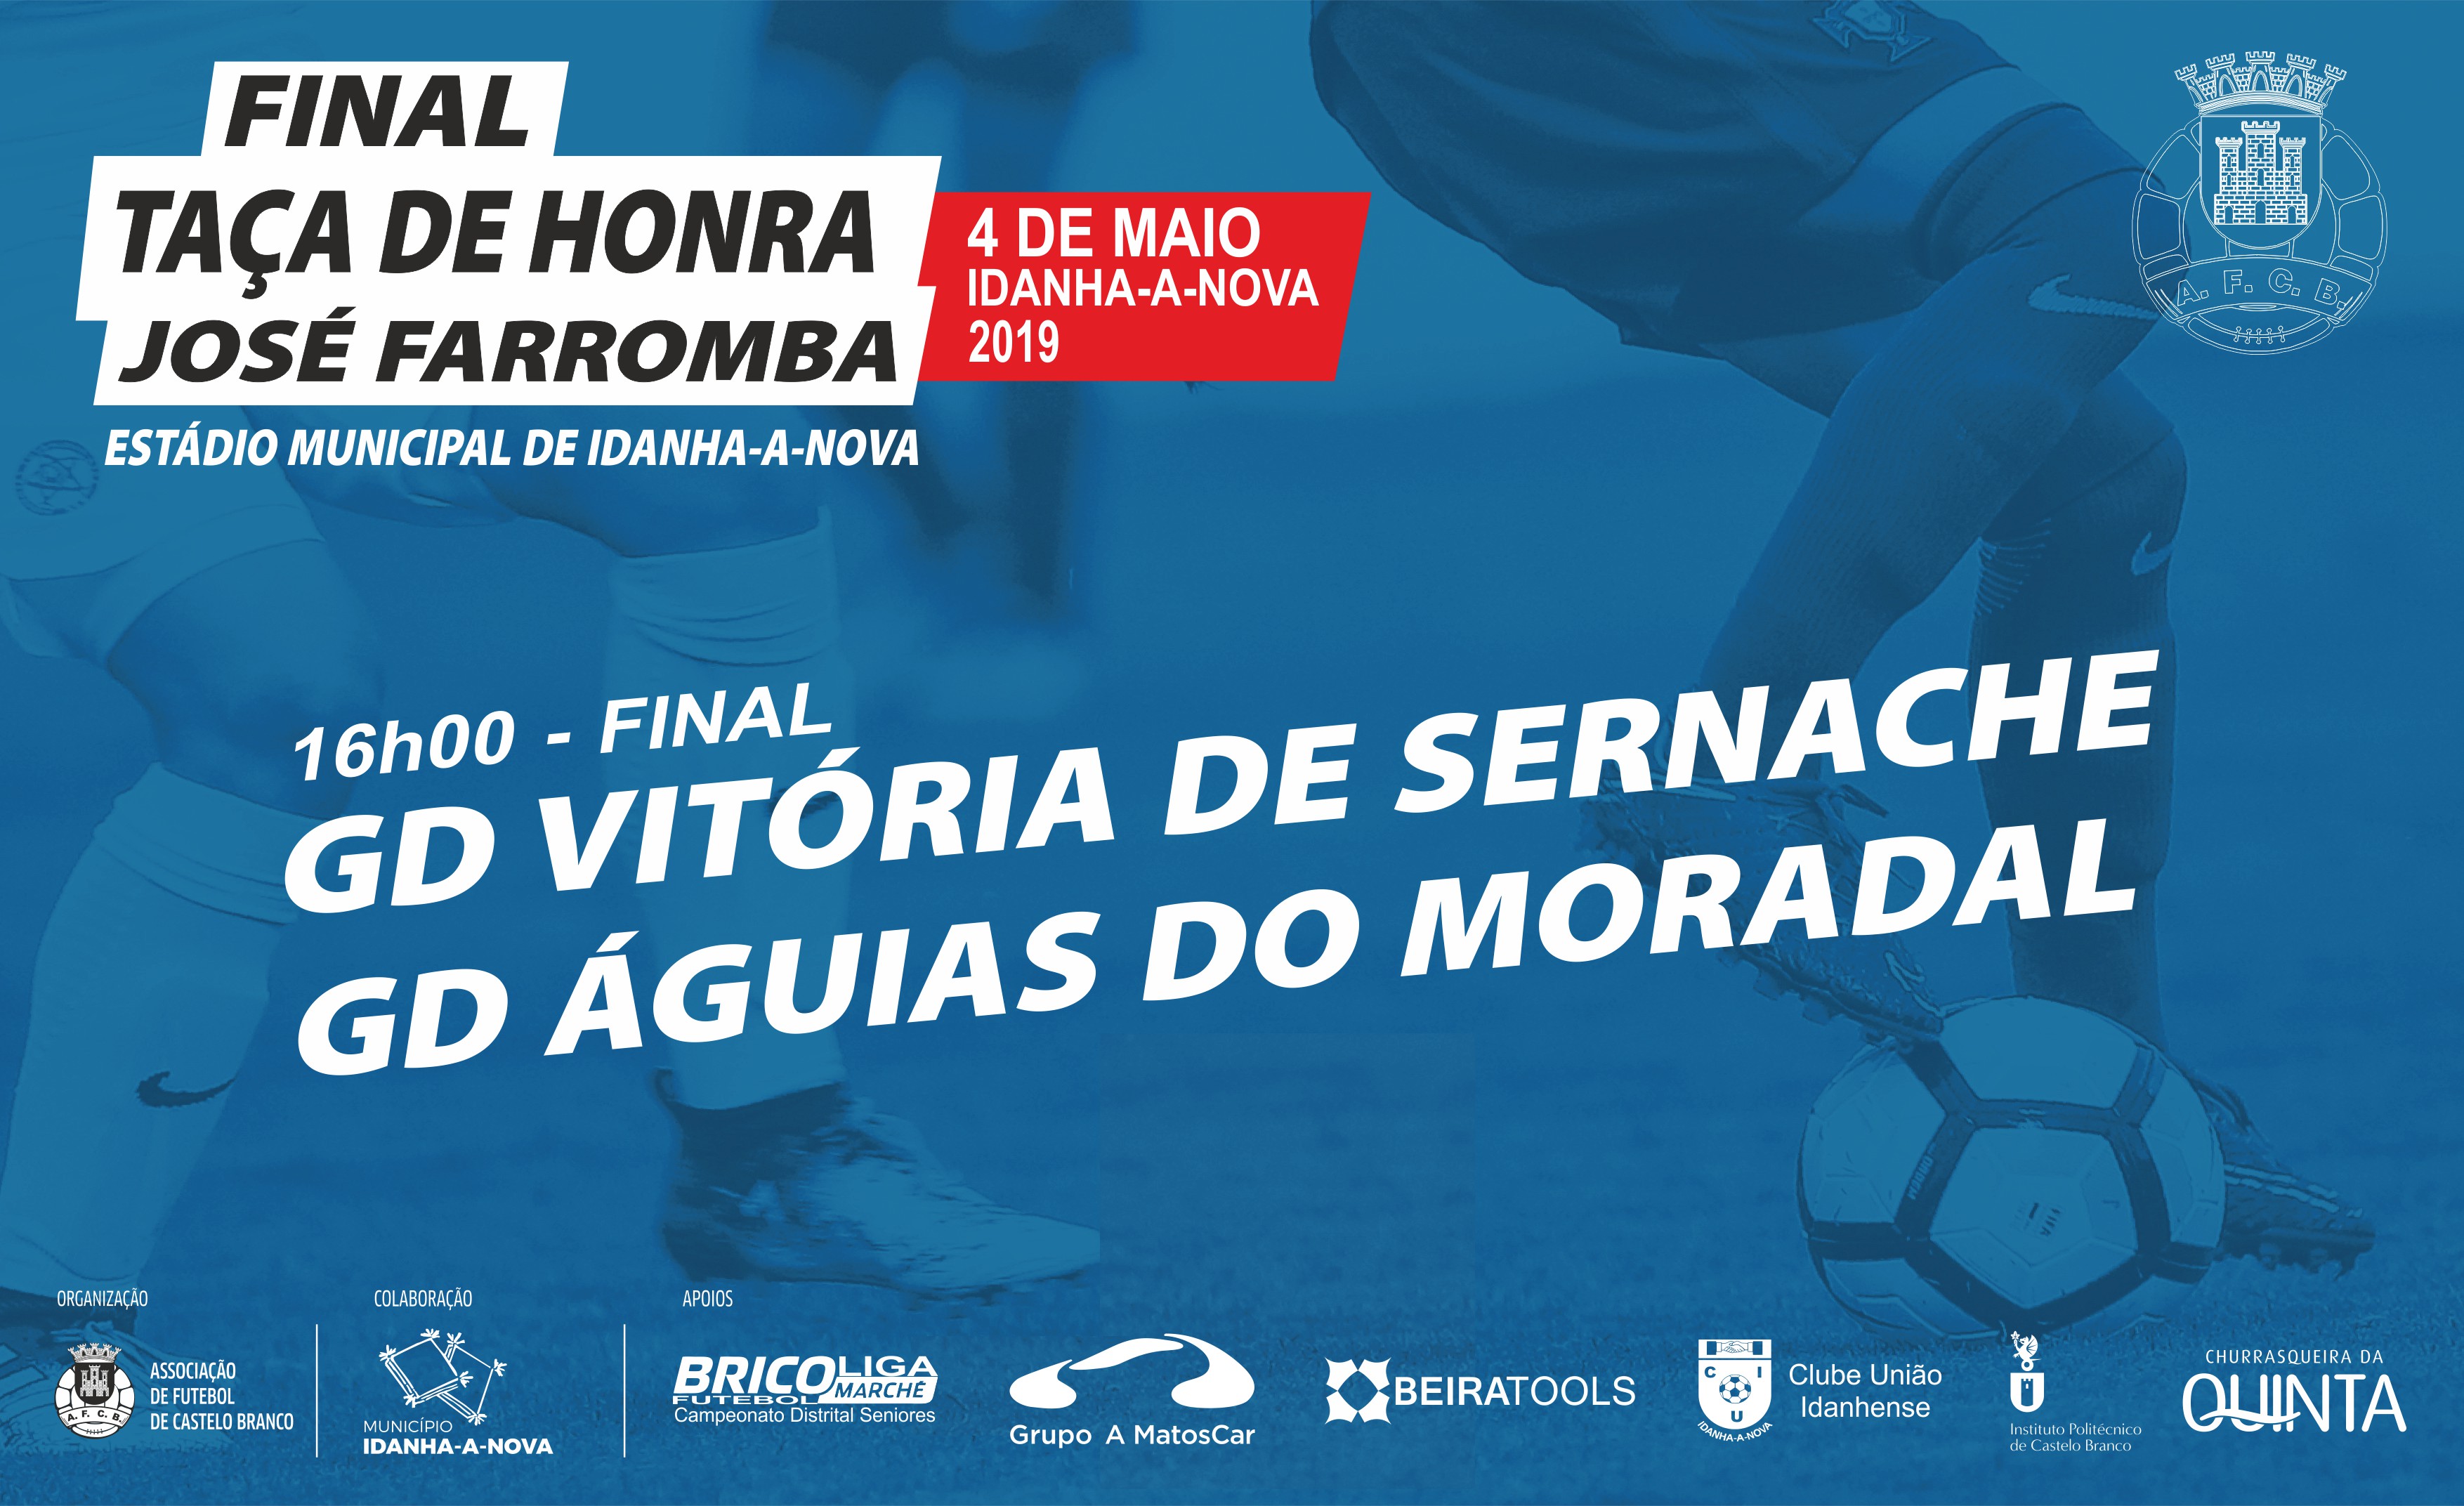 Taça de Honra Jose Farromba - Final